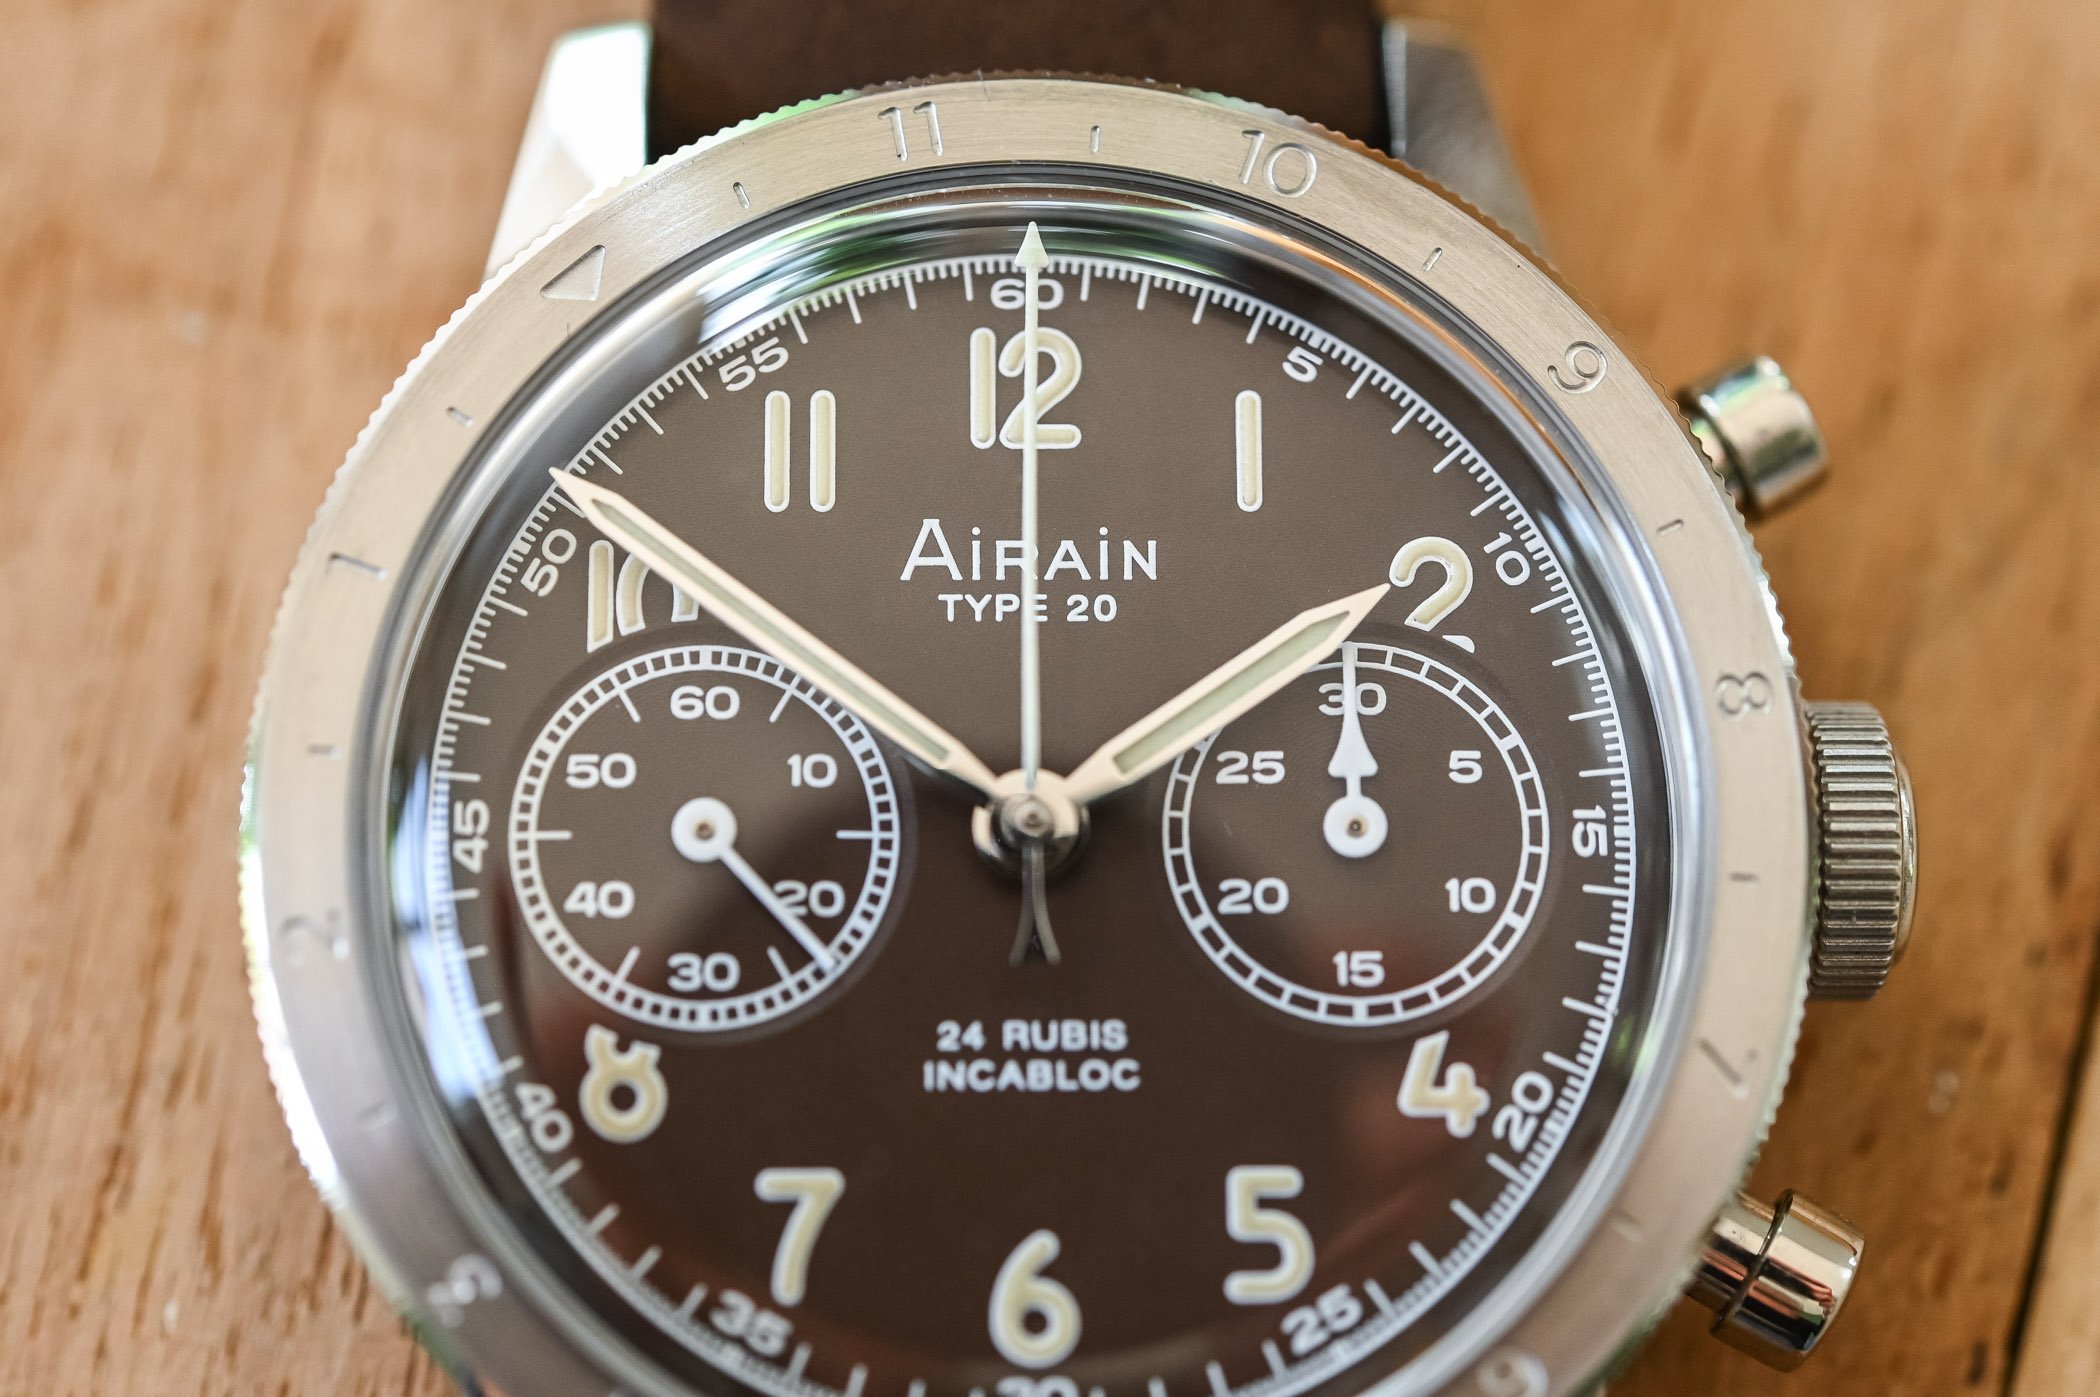 Airain Type 20 Re-Edition Brown, ограниченная серия